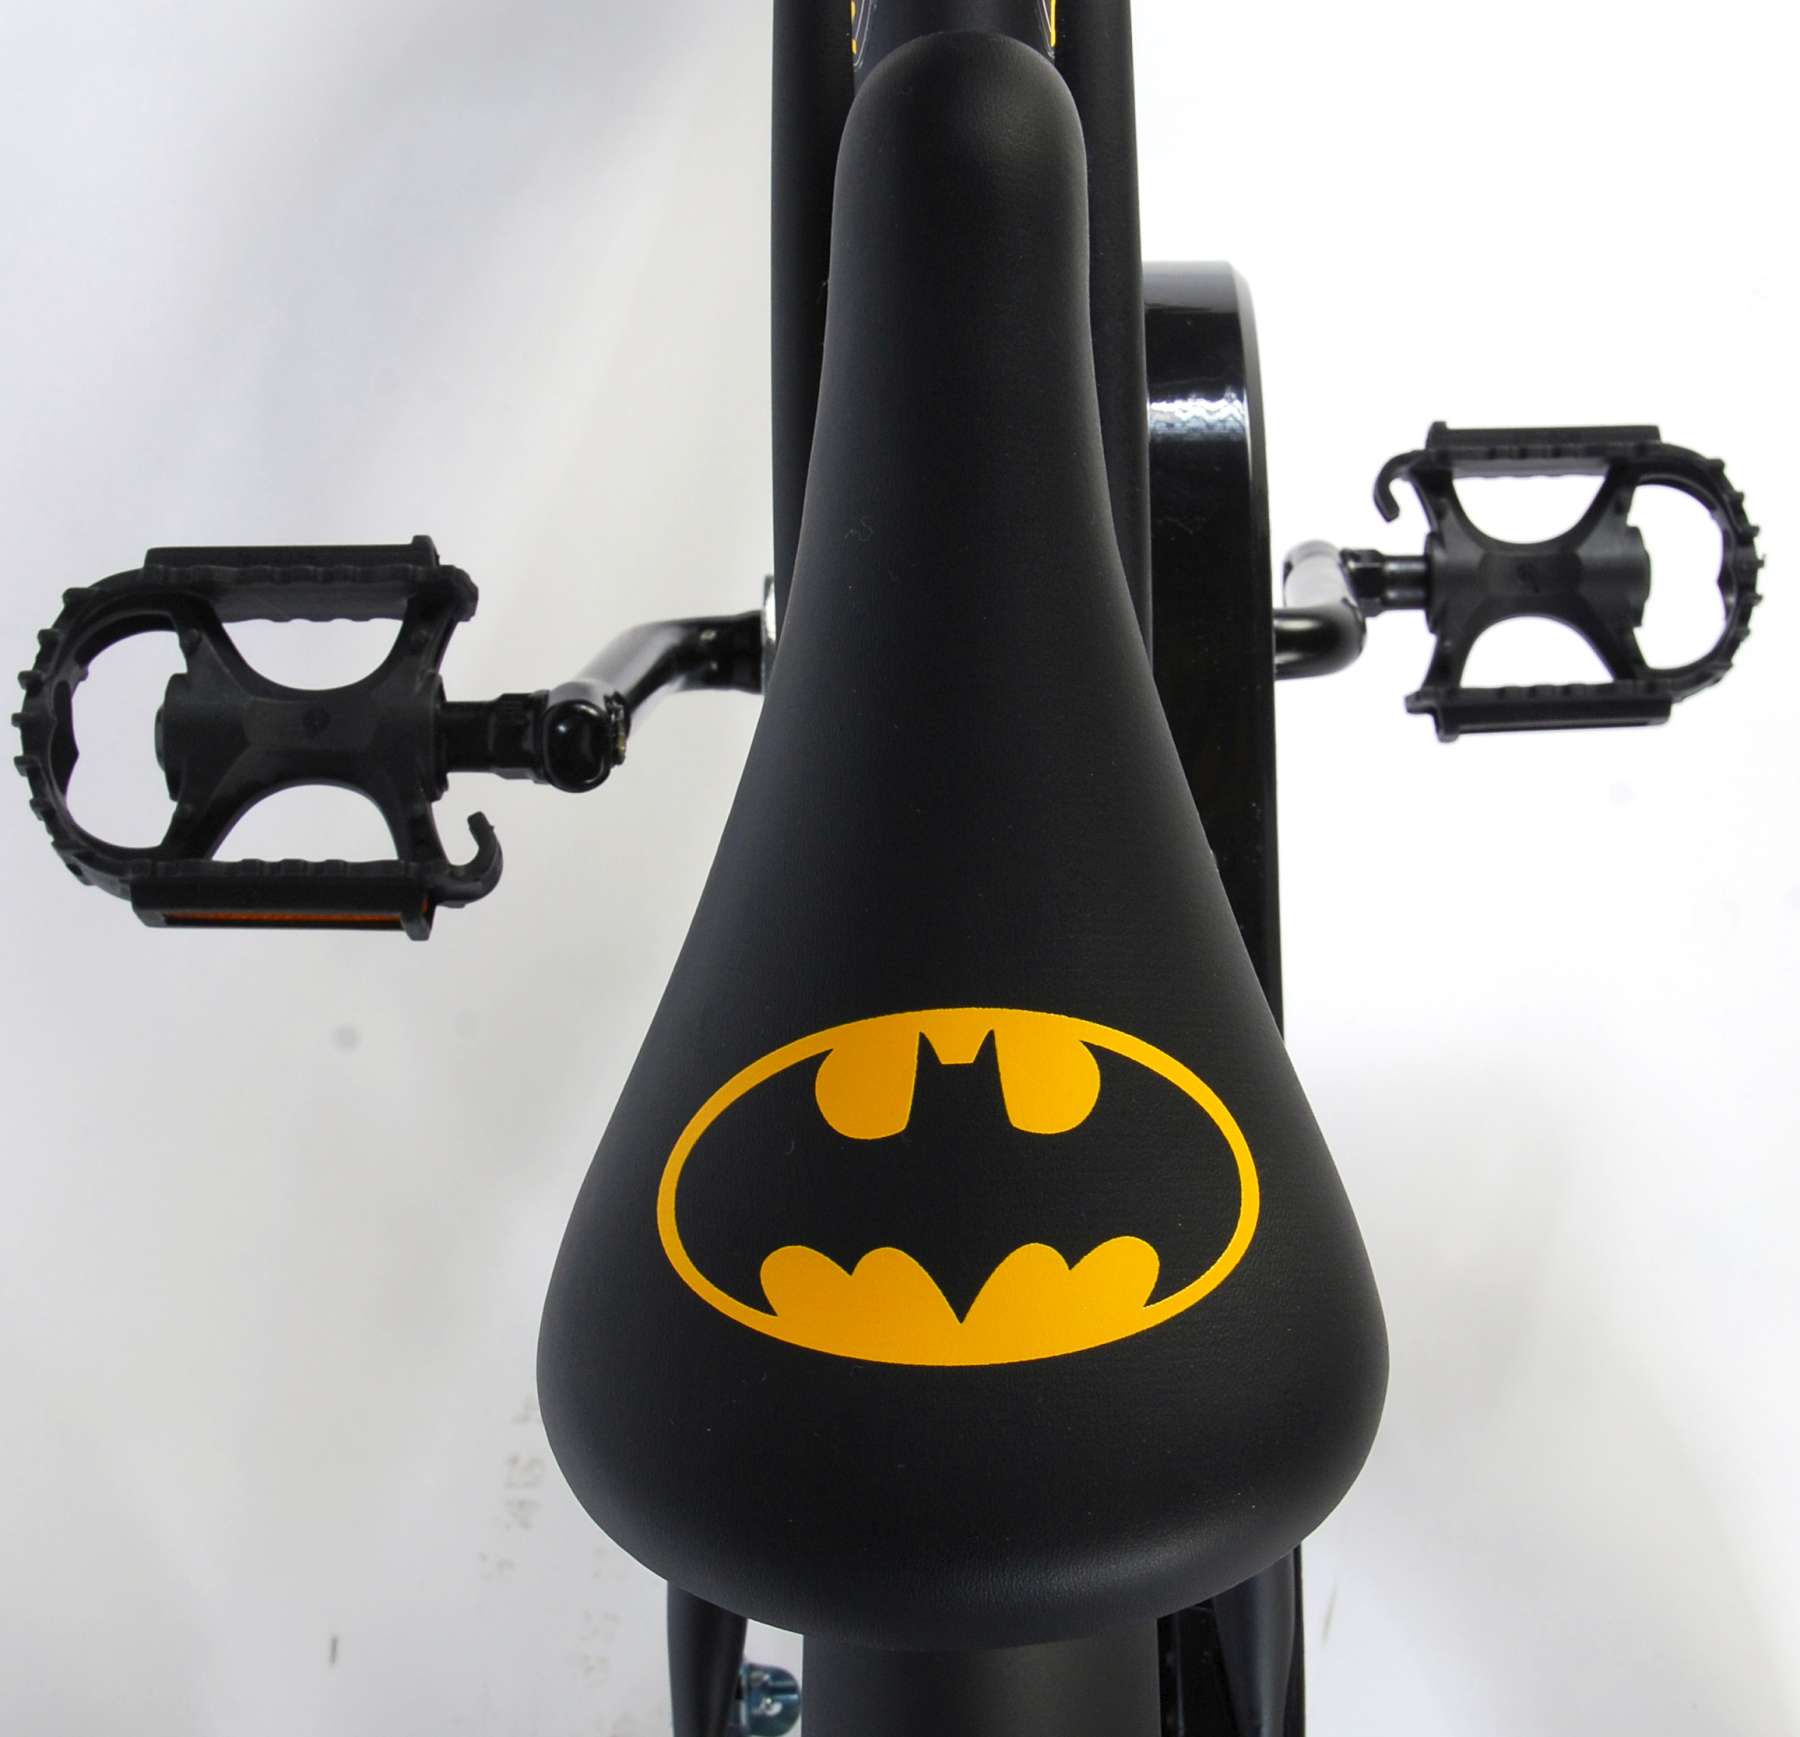 16 inch batman bike